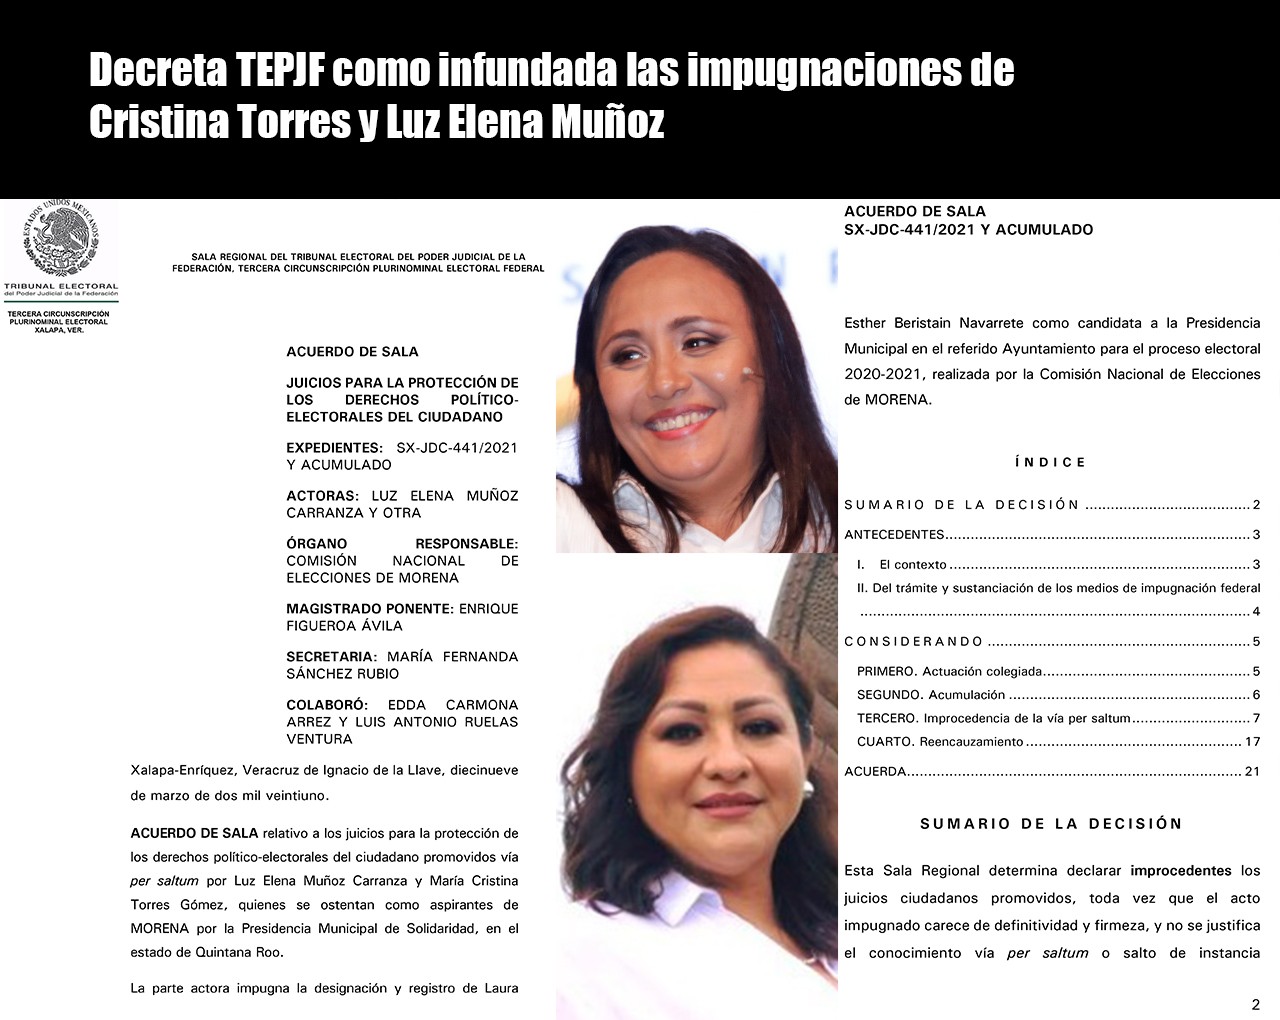 Decreta TEPJF como infundada la impugnacion de Cristina Torres QUINTANA ROO PRESS SOLIDARIDAD